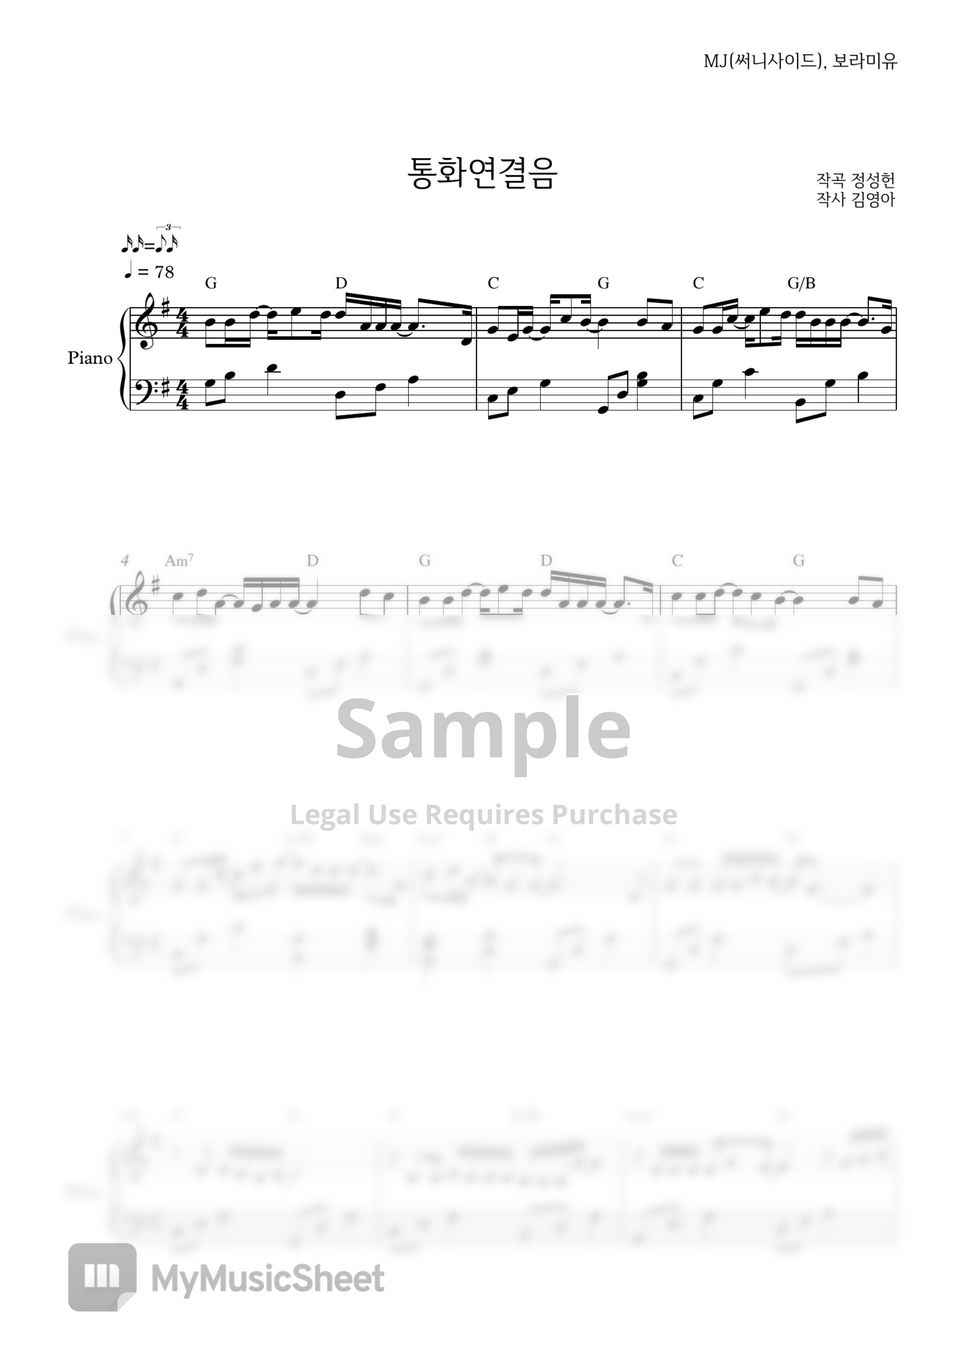 보라미유(BRMY), MJ(써니사이드) - 통화연결음(Ring Back tone) (easy ver.) by PIANOiNU